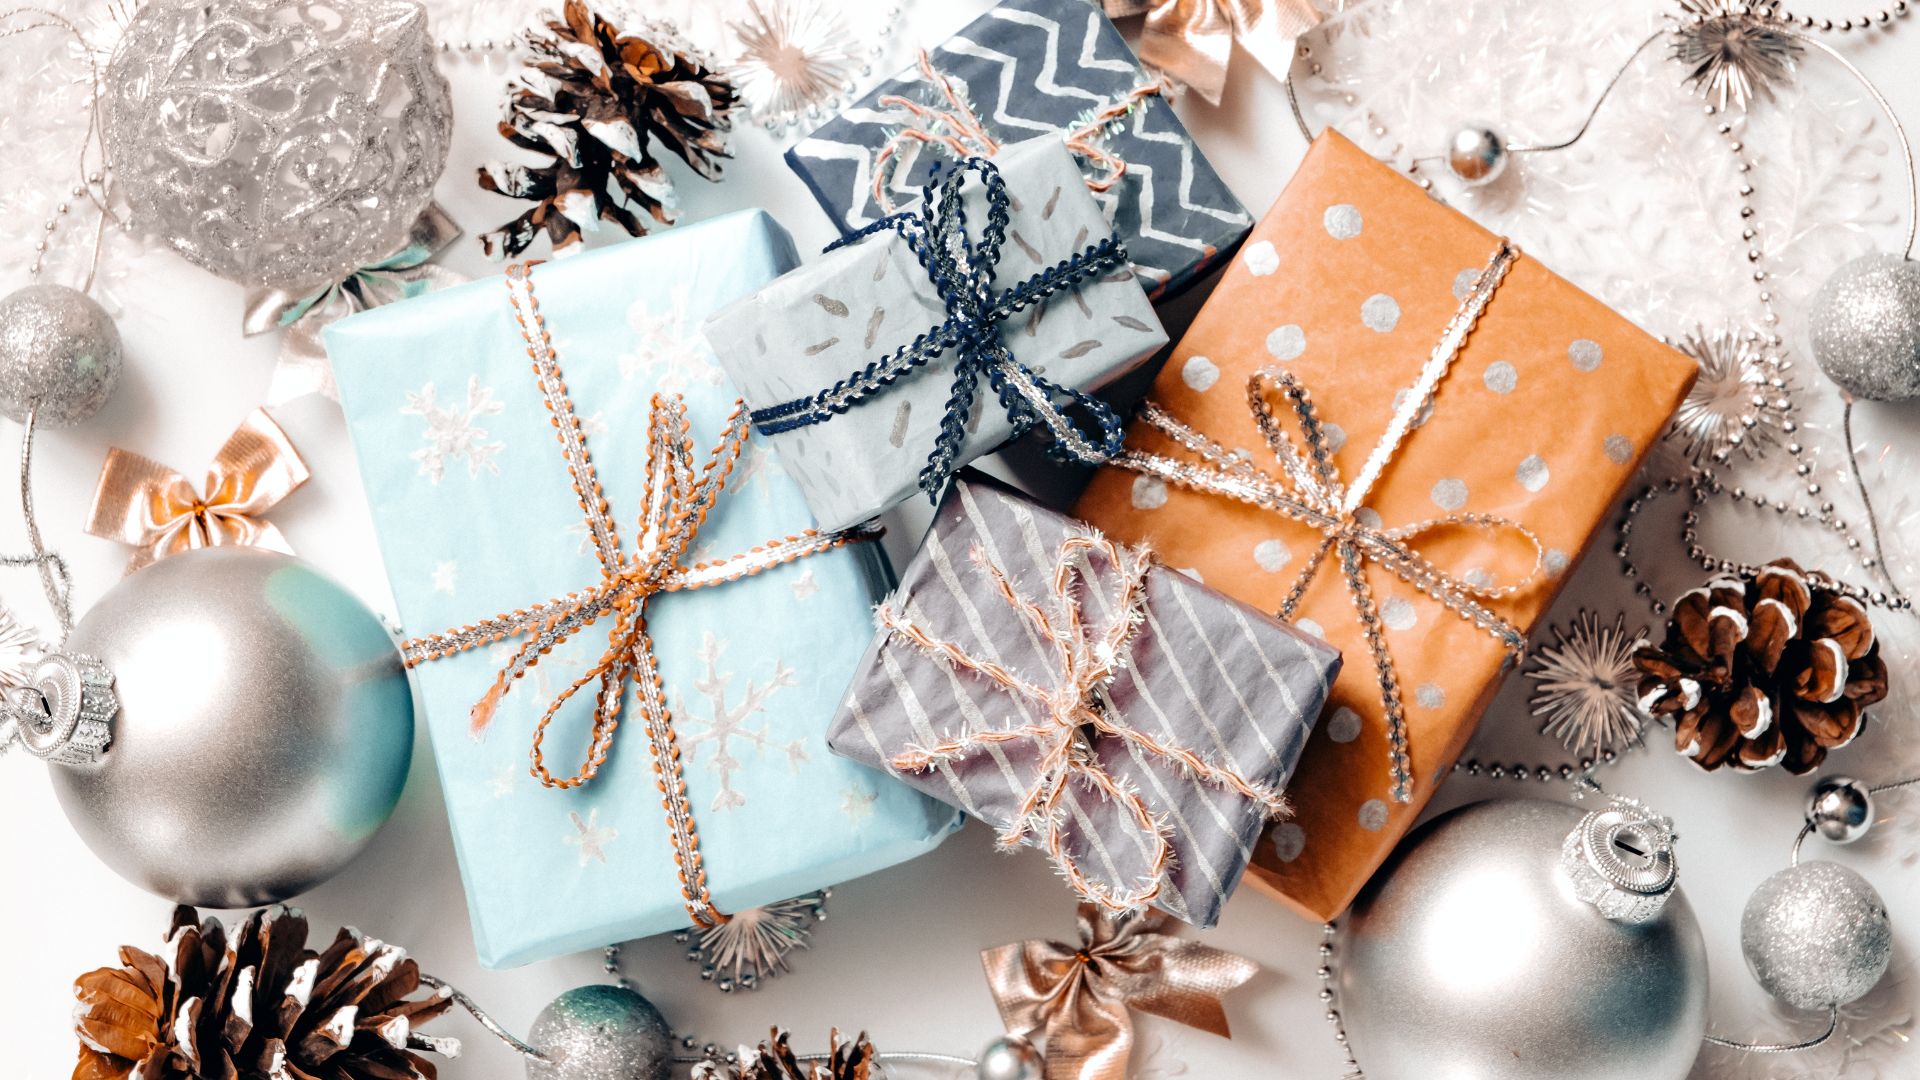 Imagem de fundo branco com vários elementos natalinos como vaixas de presentes, bolas de árvore de natal, pinhas e laços.